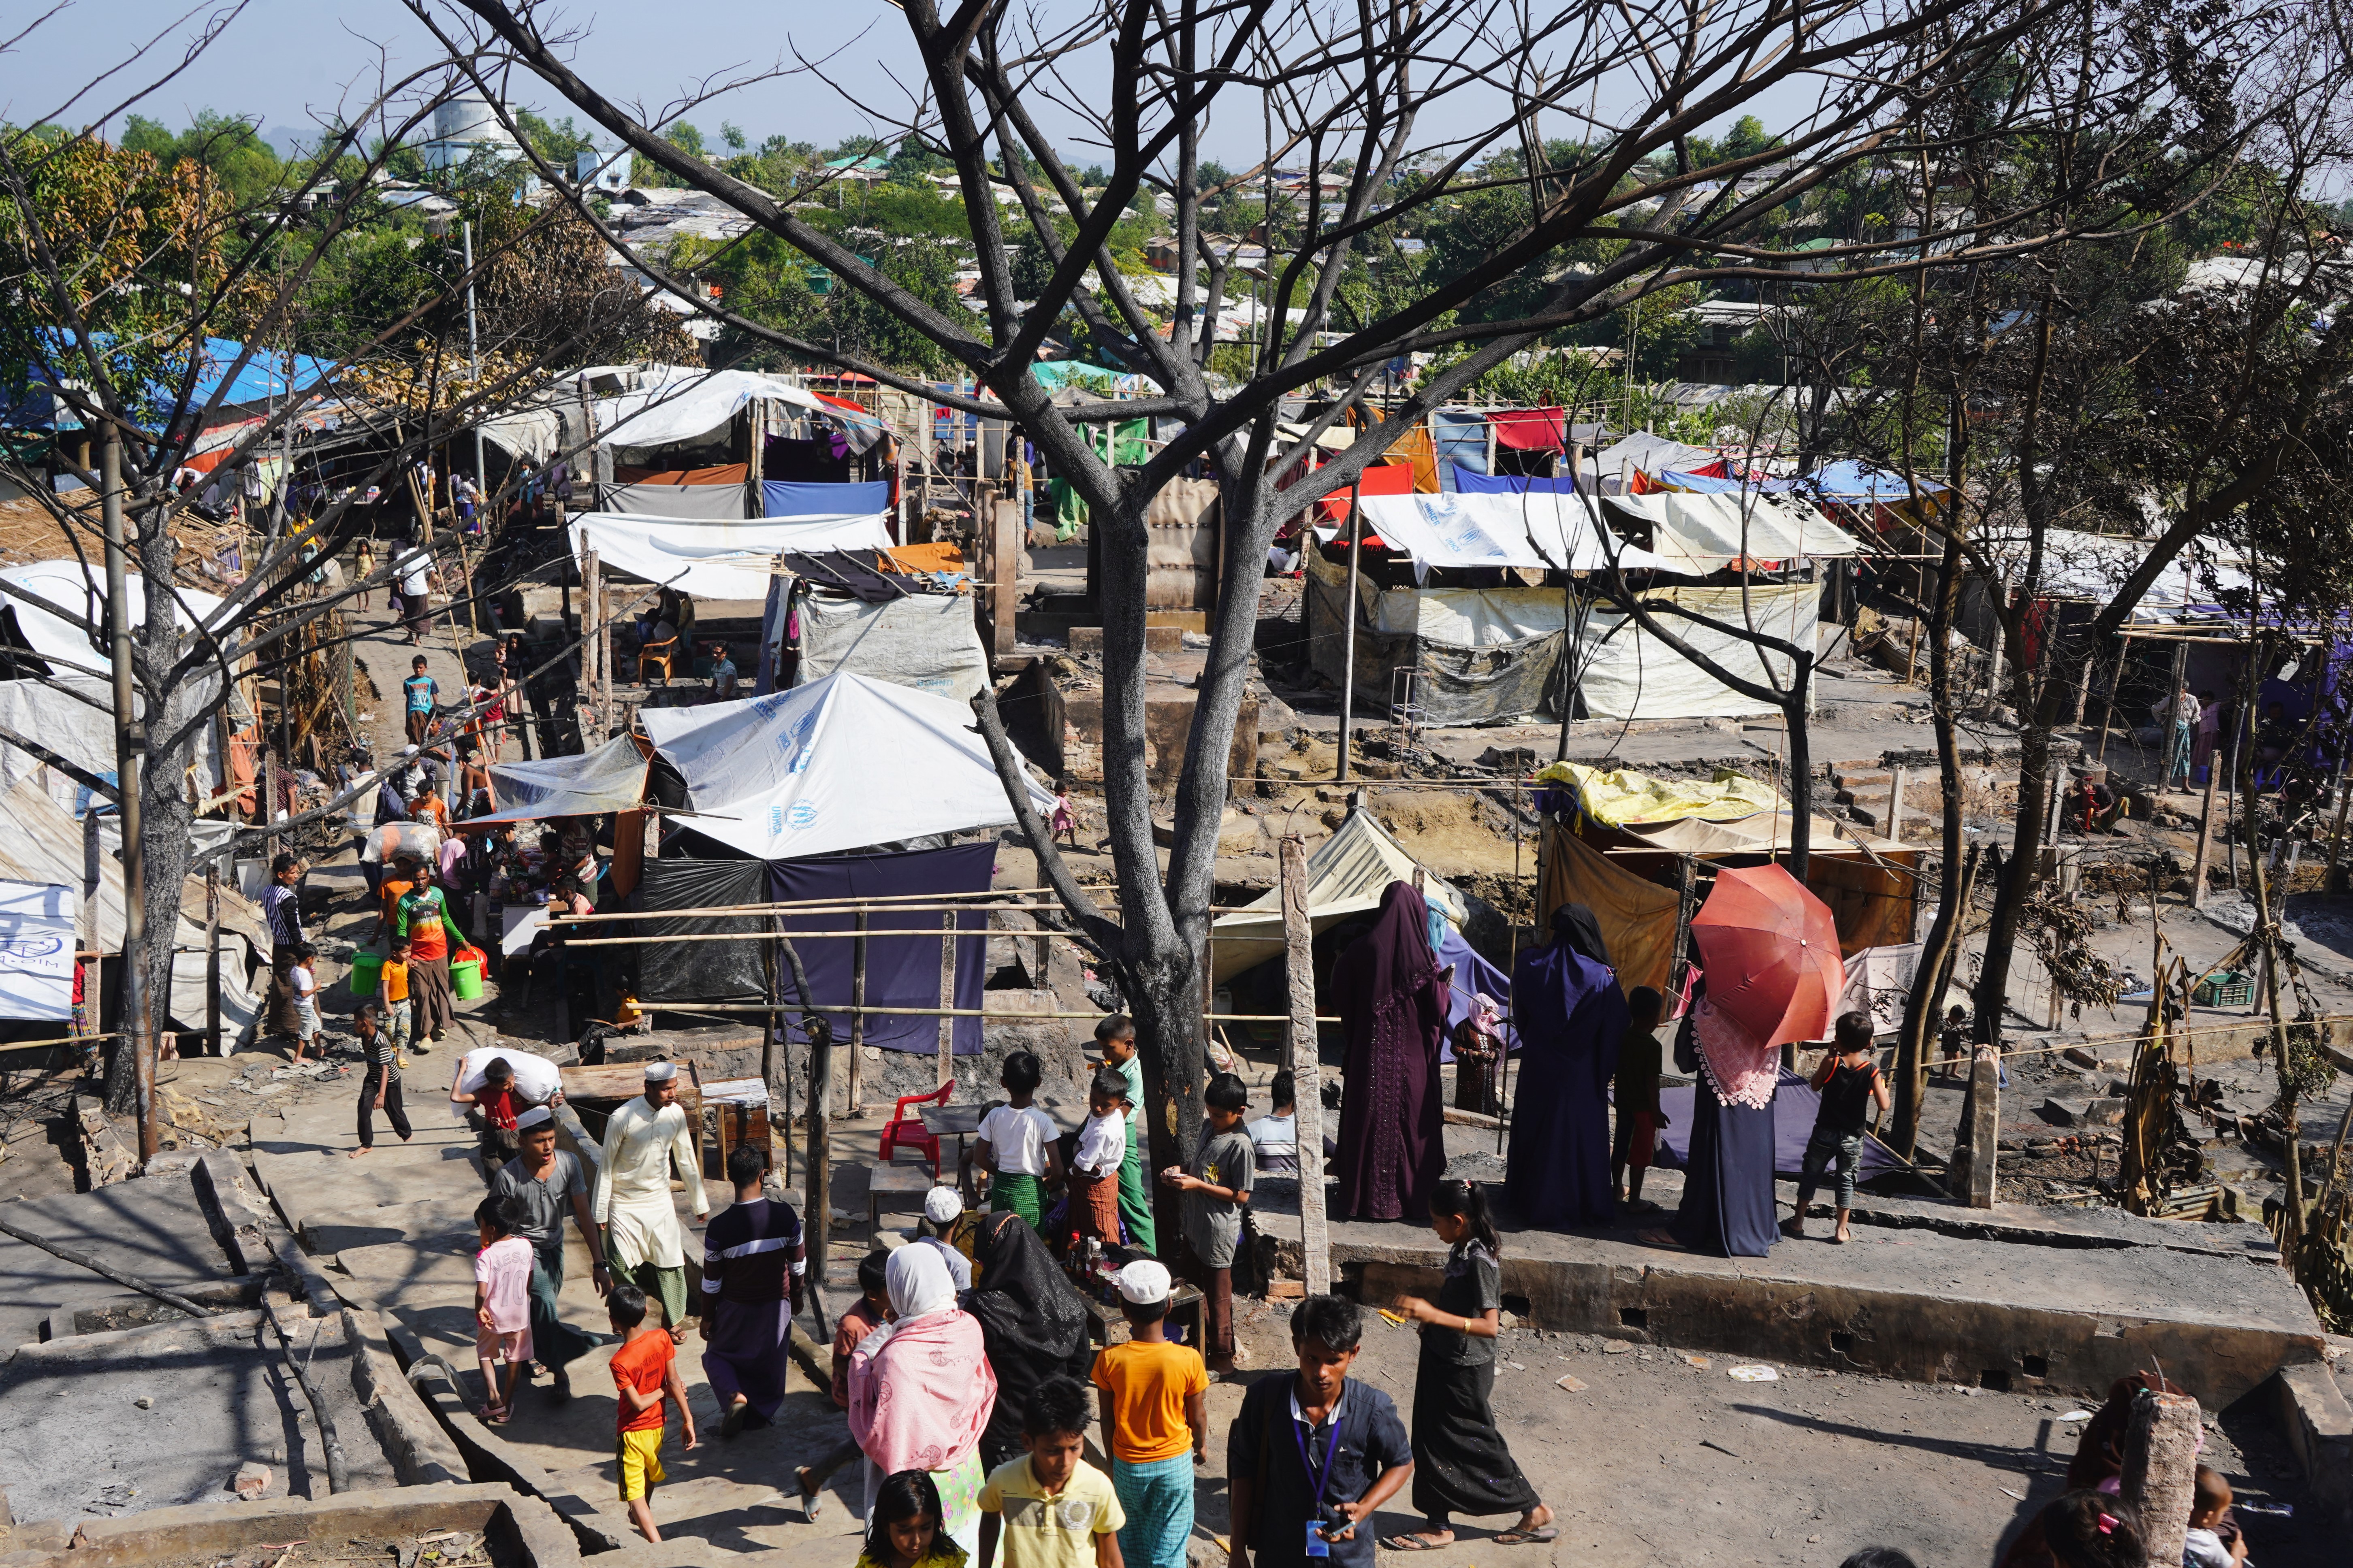 5 號營地是孟加拉科克斯巴扎爾 33 個難民營之一。它是世界上最大的難民營，收容超過 100 多萬人。僅 5 號難民營就有 27 000 多人居住，但佔地面積只有 0.6 平方公里。 © Jan Bohm/MSF